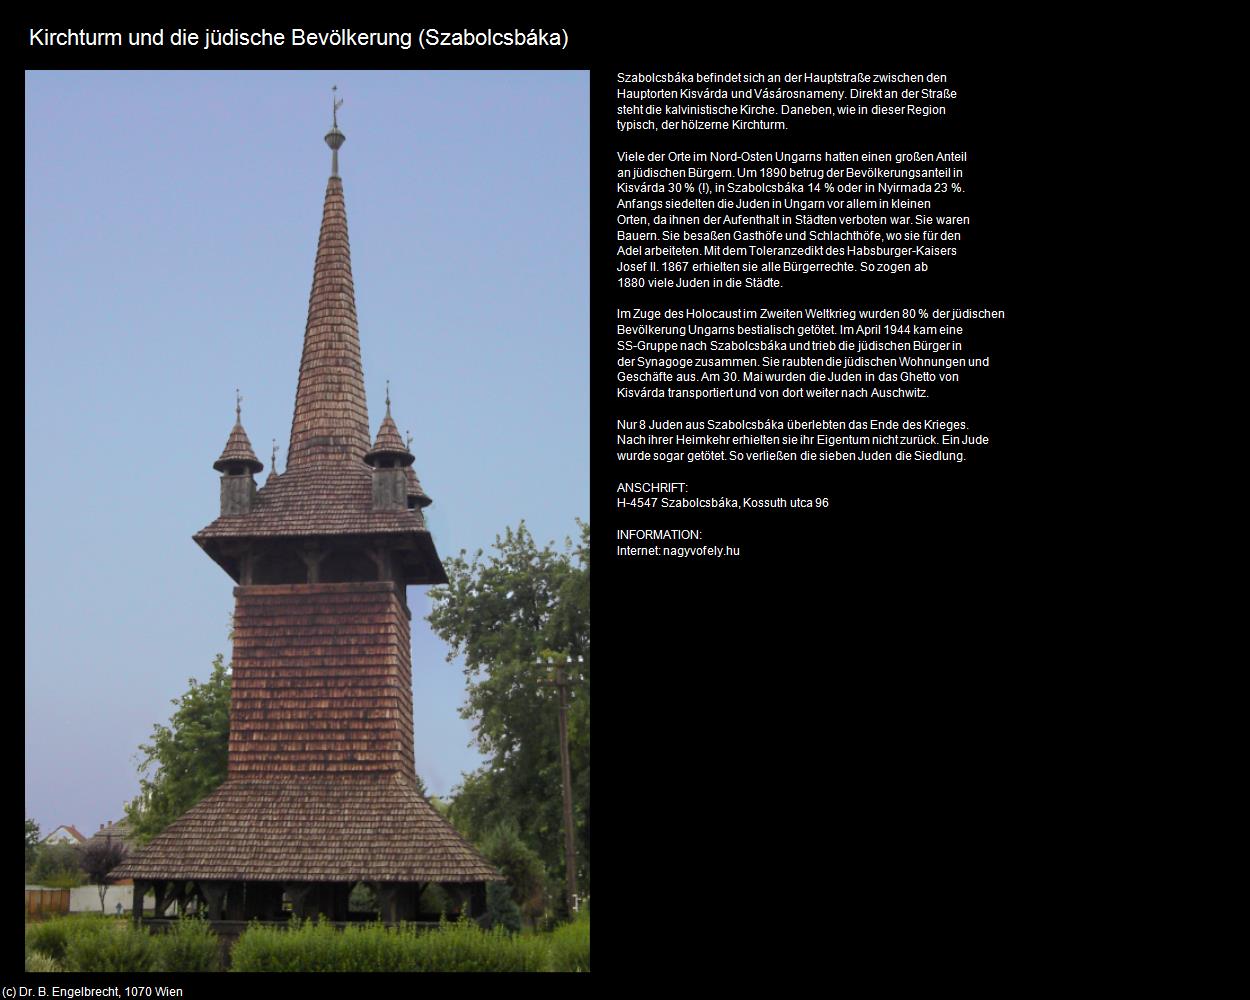 Kirchturm und die jüdische Bevölkerung (Szabolcsbáka) in UNGARN 